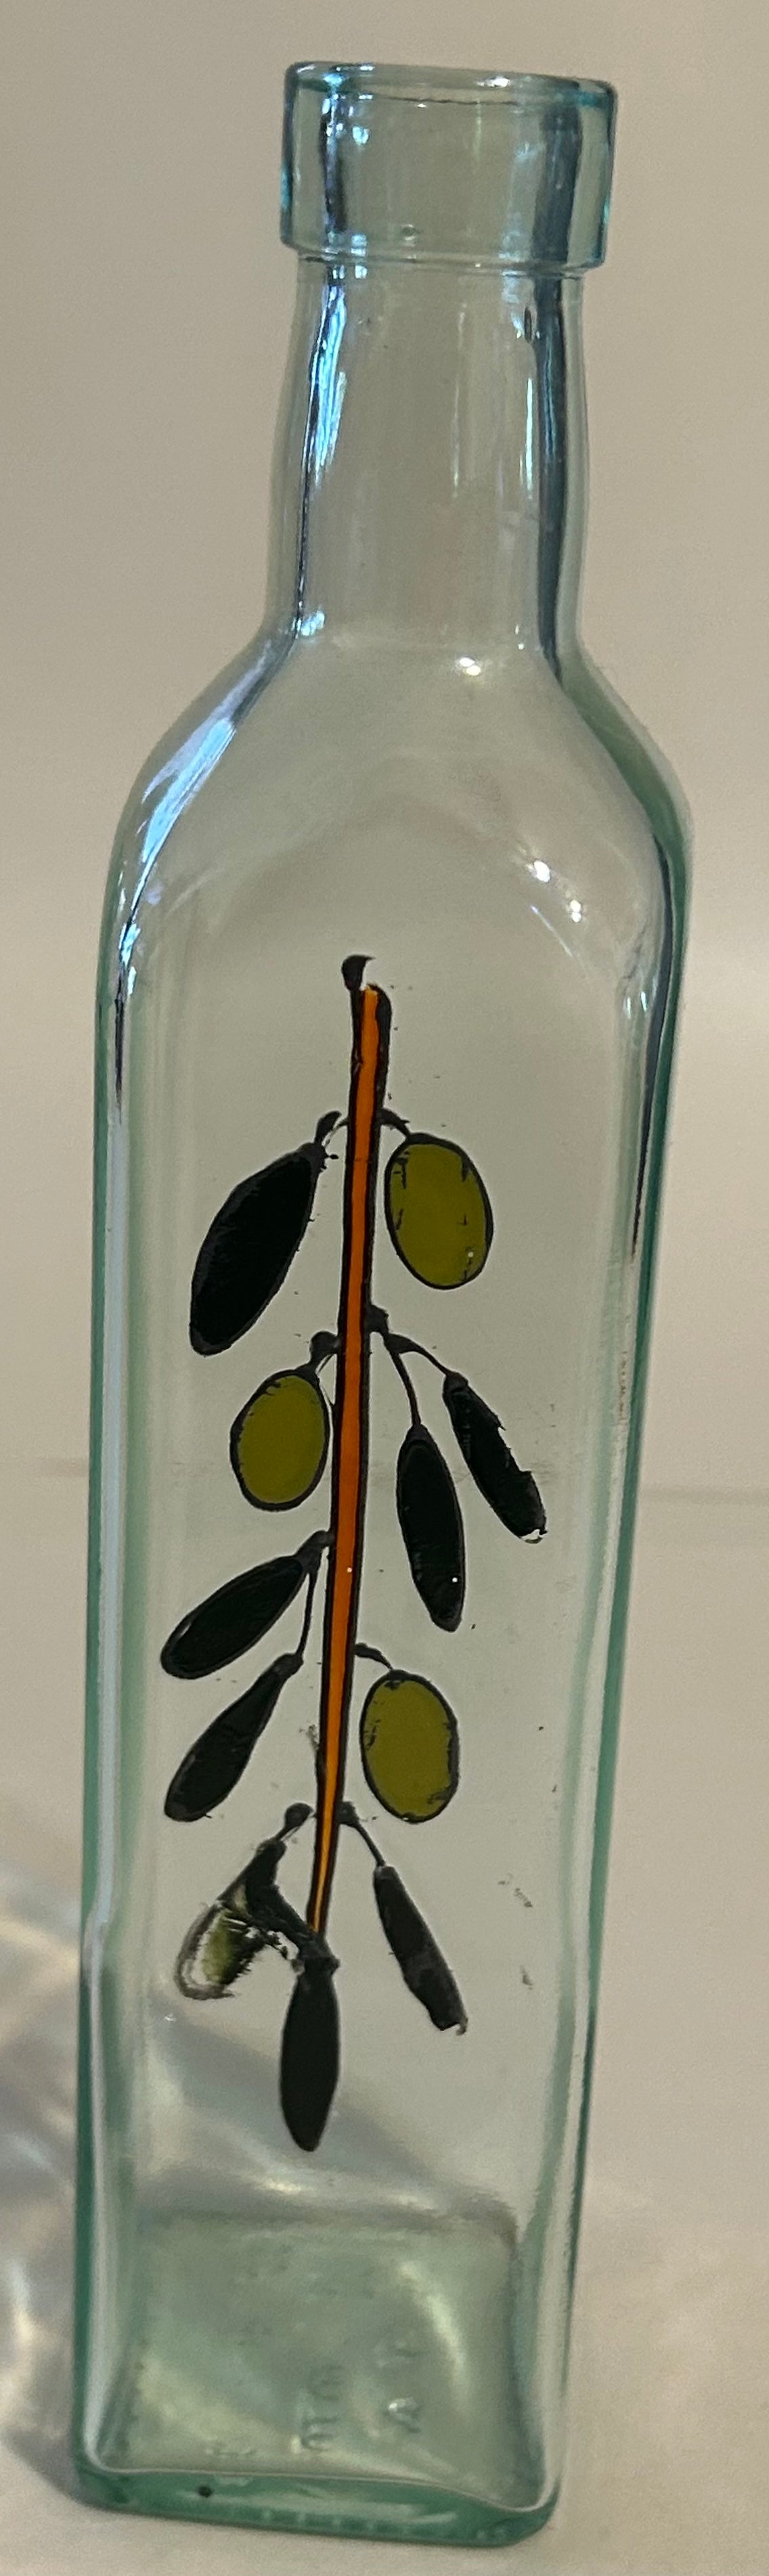 USED Glass Painted Art Bud Vase